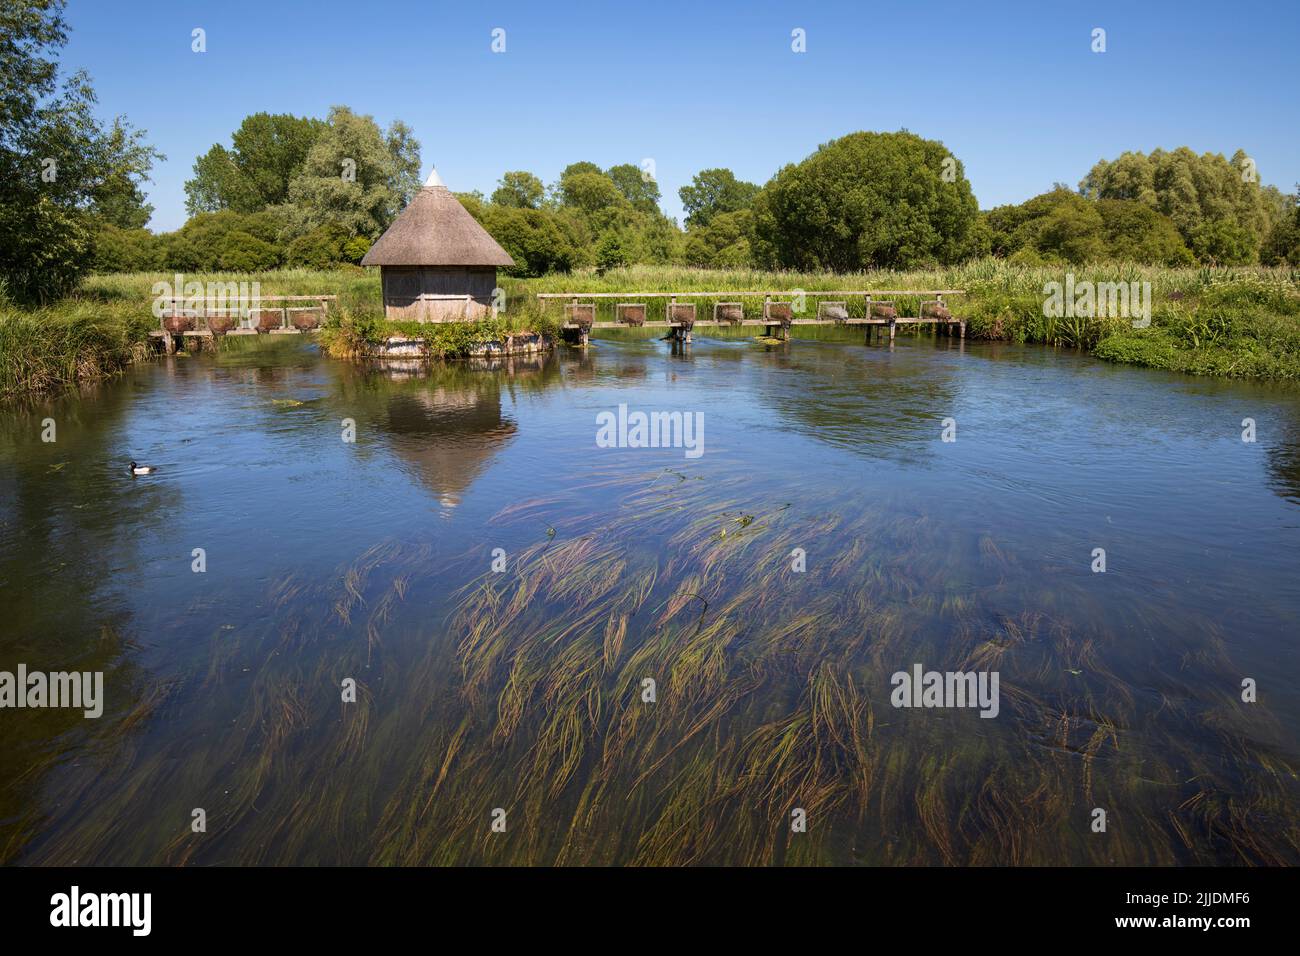 Thatched fishing hut on the River Test, Longstock, Stockbridge, Hampshire, England, United Kingdom, Europe Stock Photo